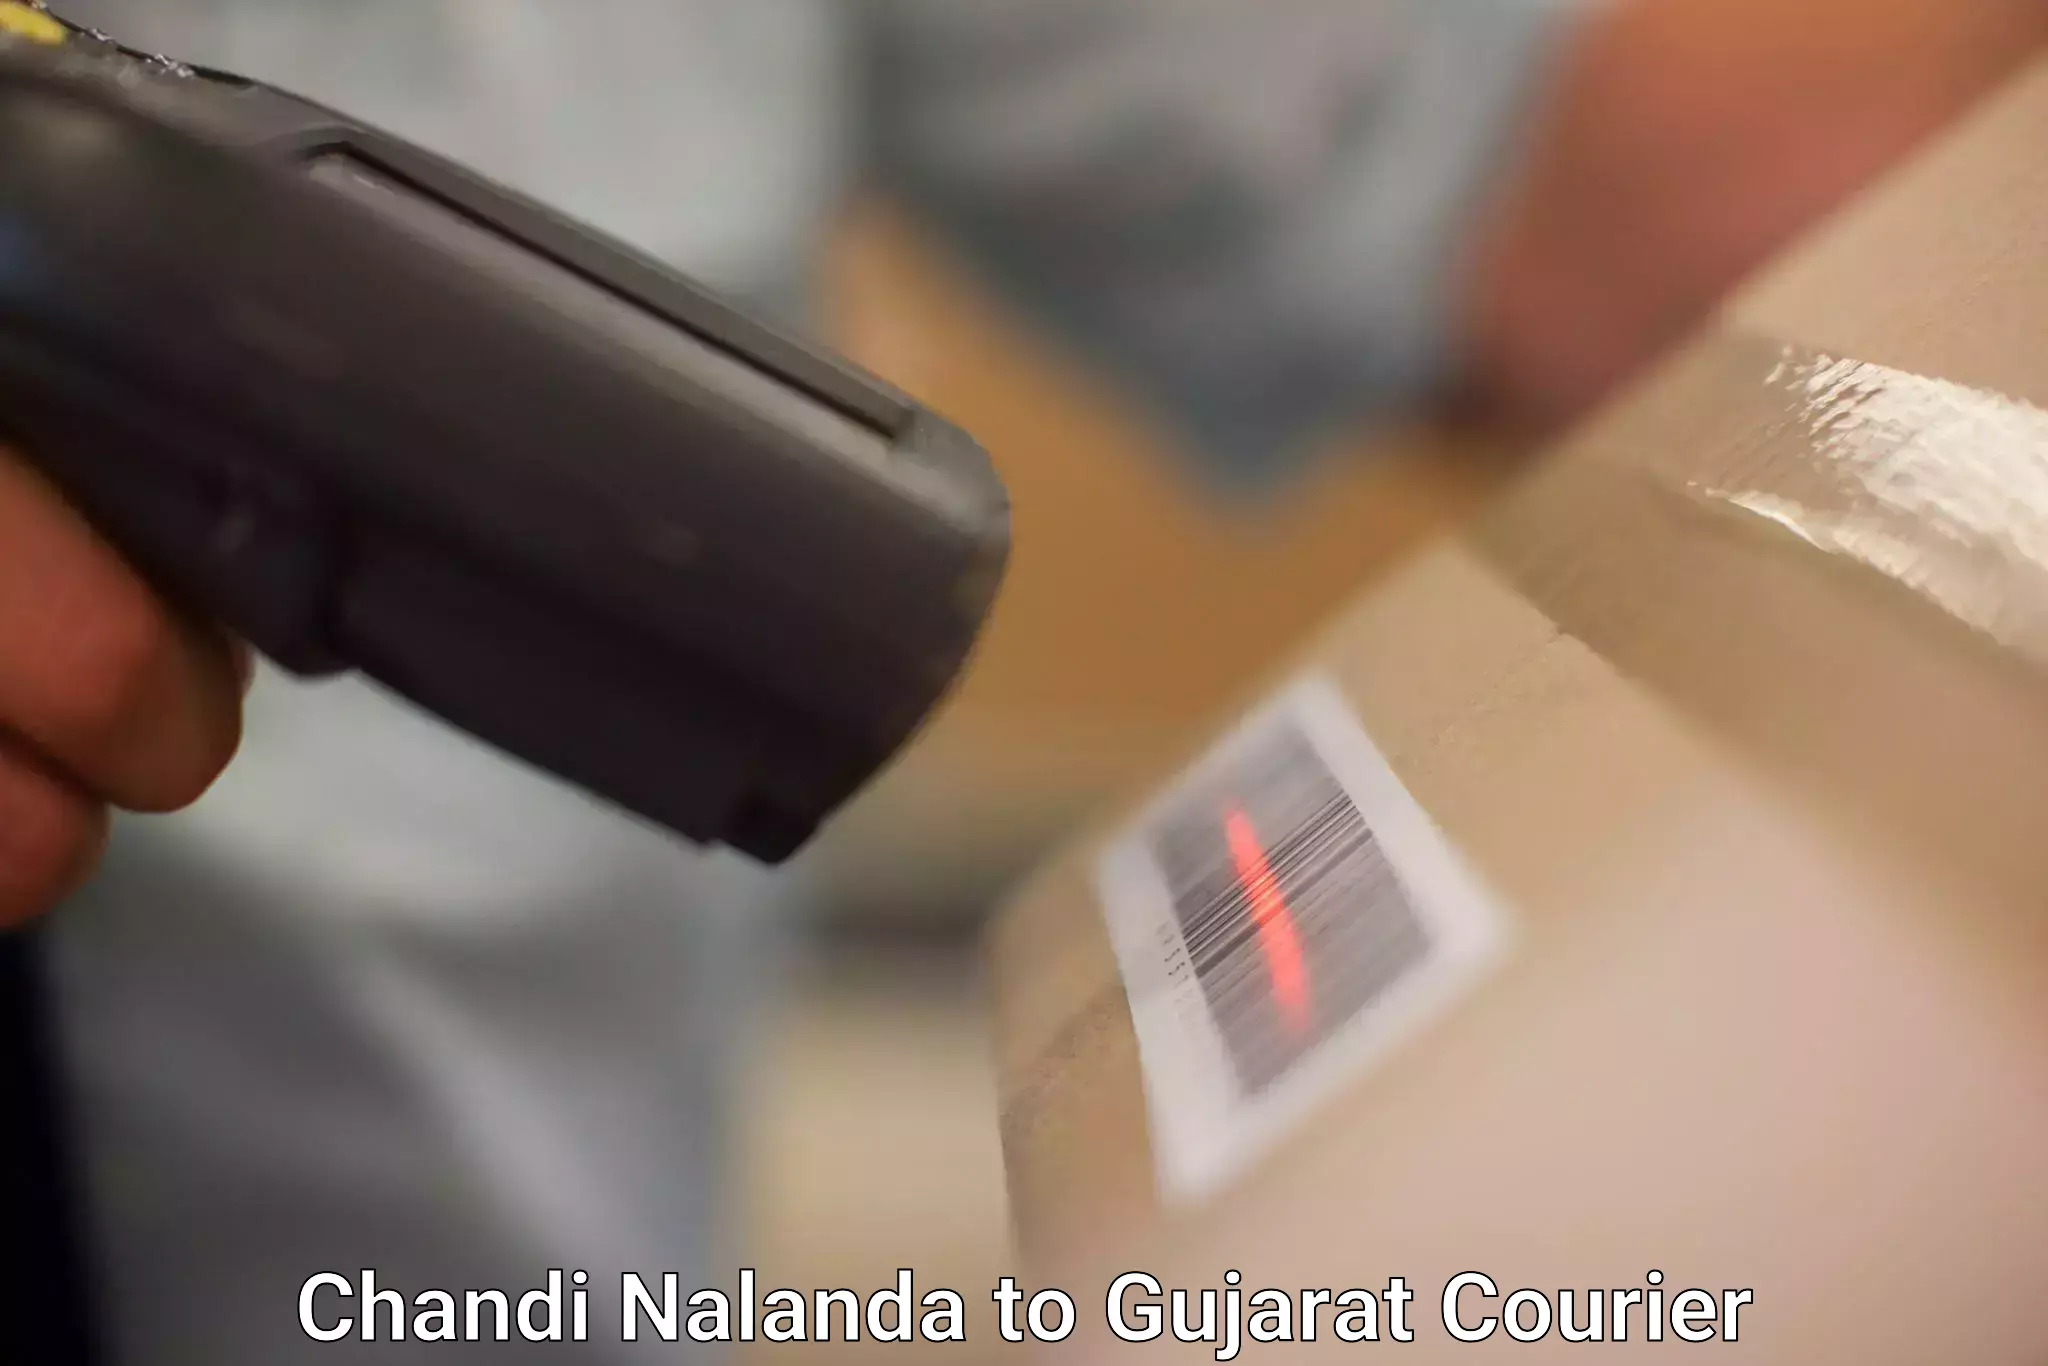 Expedited shipping solutions Chandi Nalanda to Ahmedabad